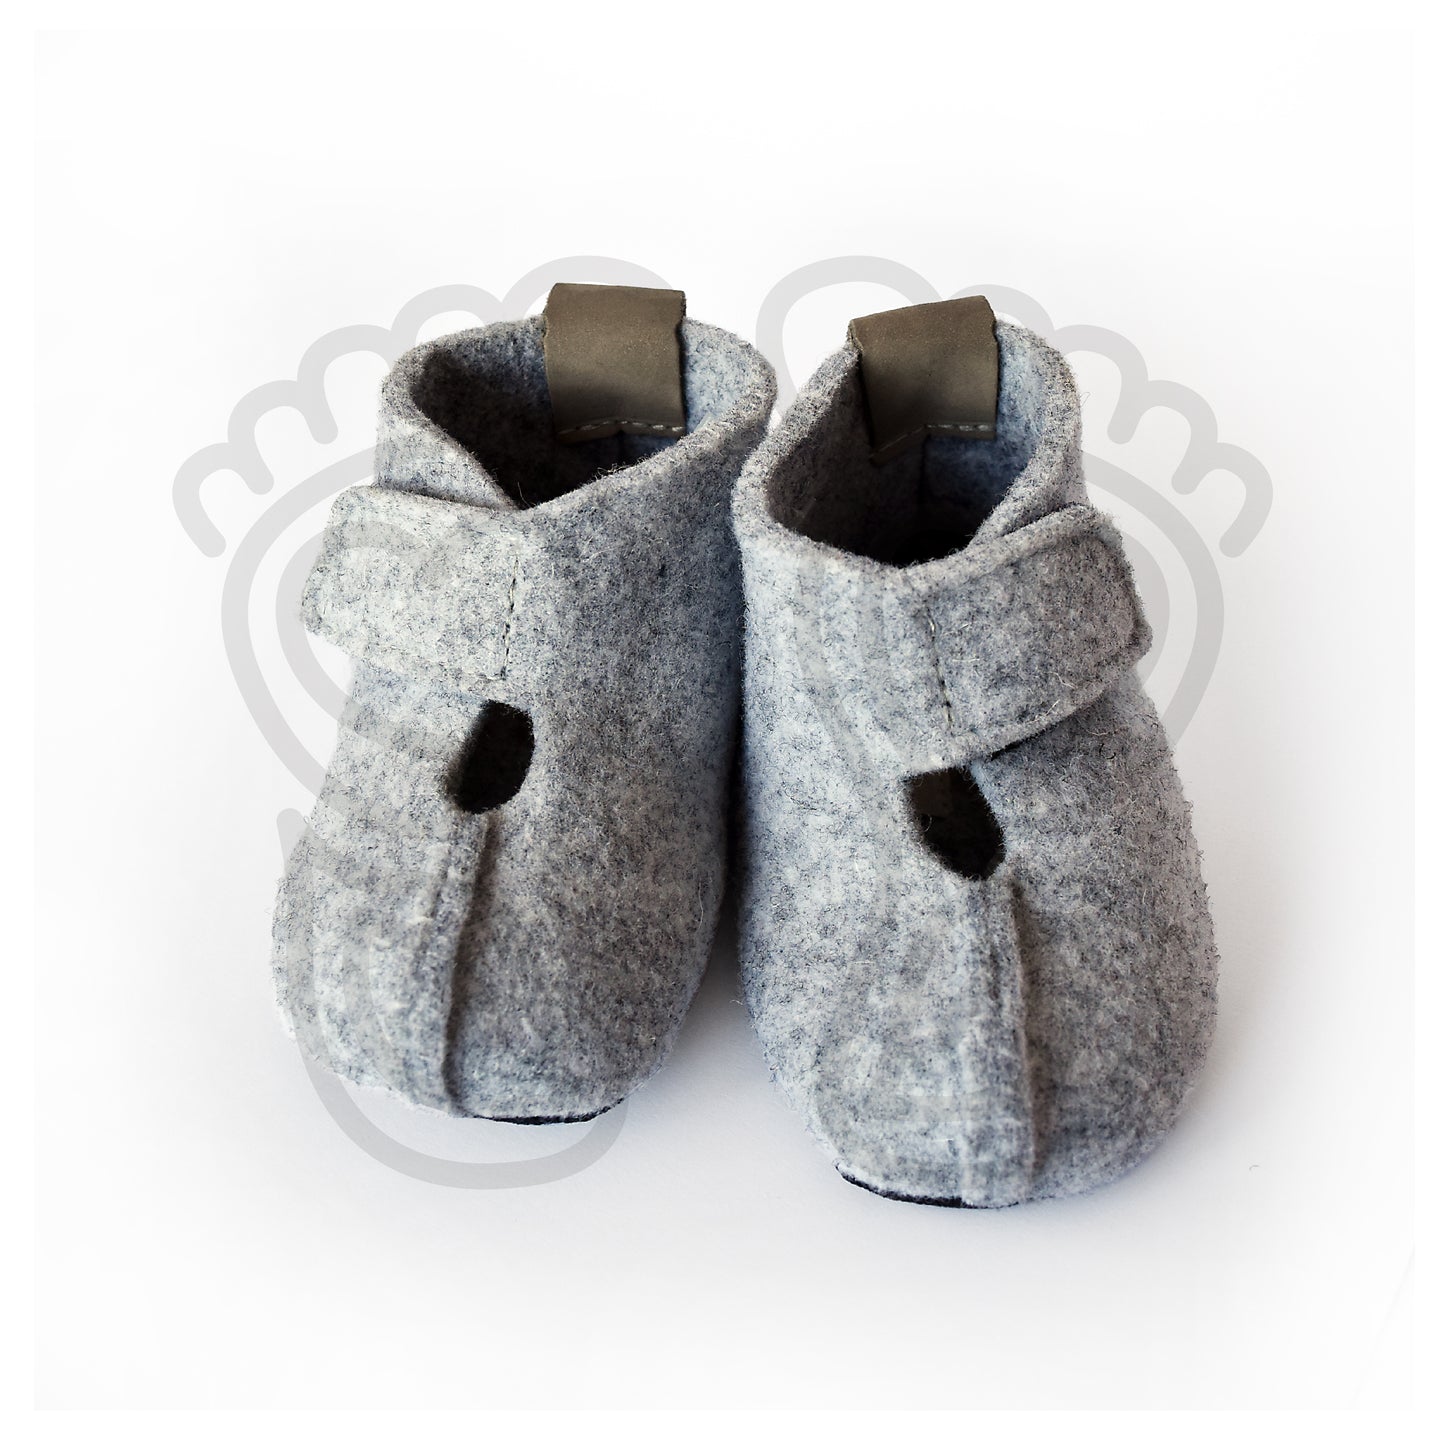 Omaking - Kaku -  zapatillas de casa barefoot de lana - gris claro